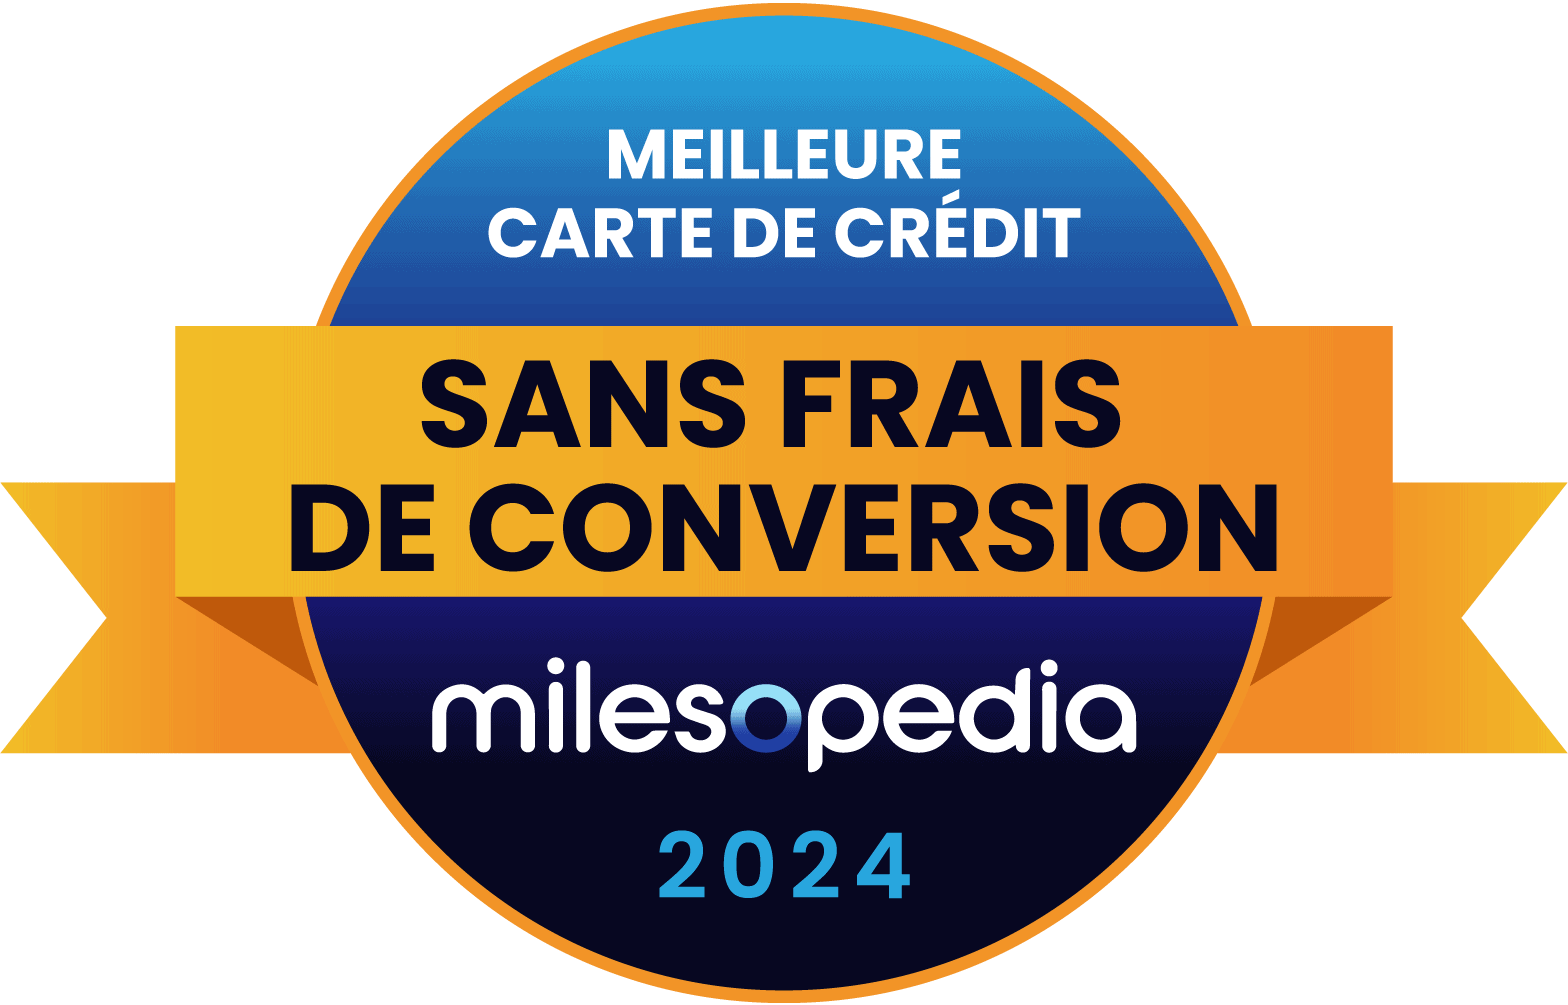 SansFraisCconversion MeilleureCarteDeCredit Milesopedia 2024